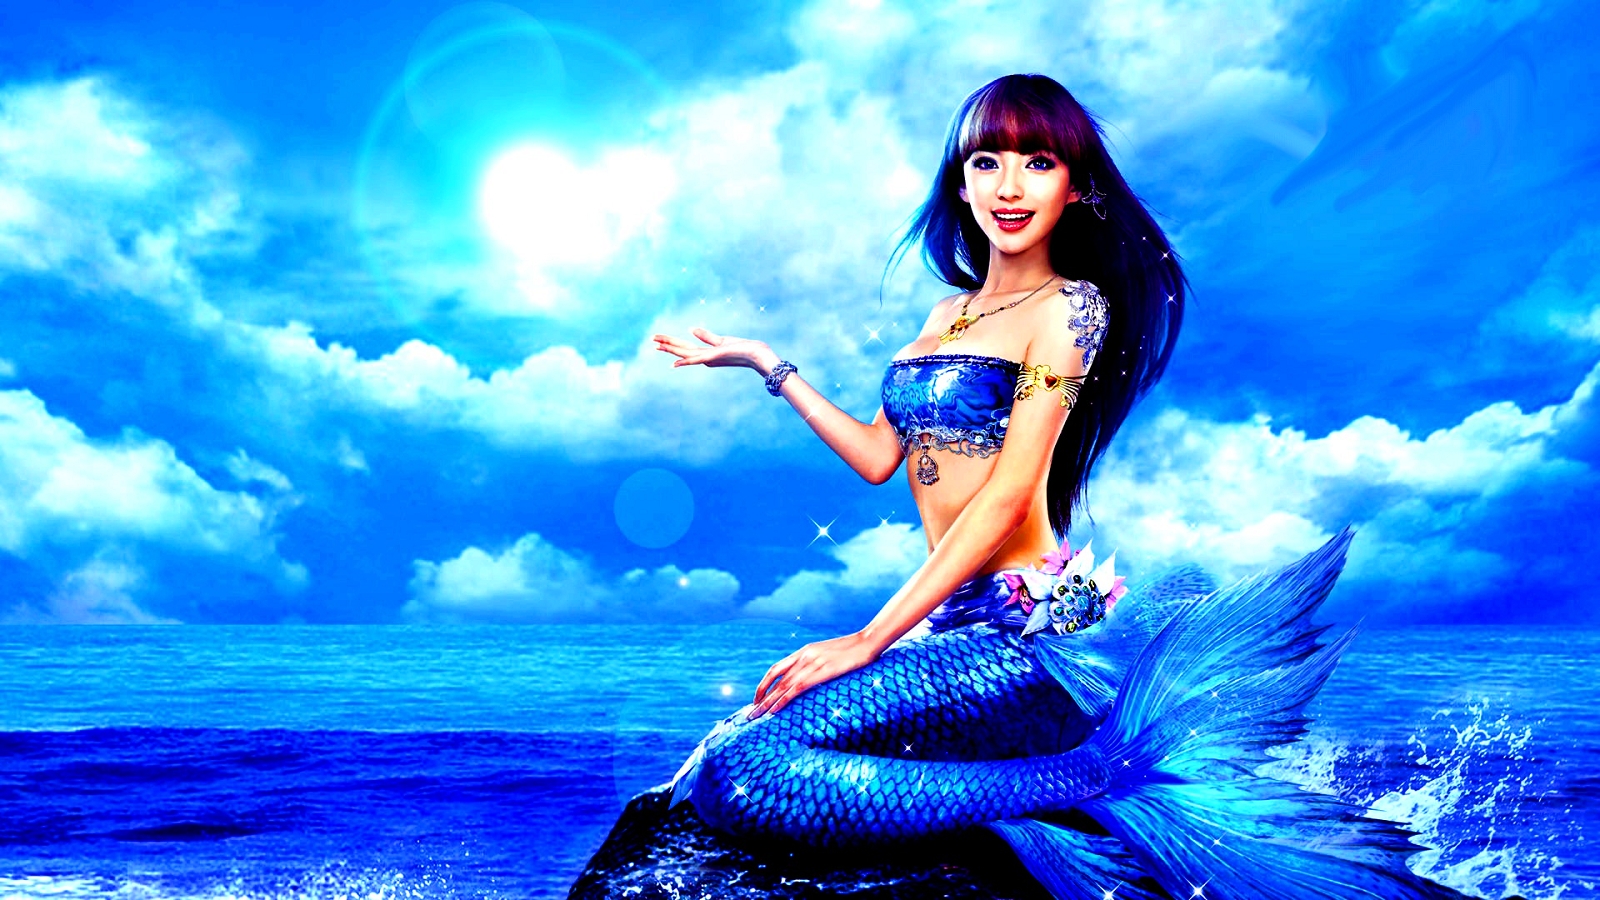 Blue Mermaid Mermaids Wallpaper